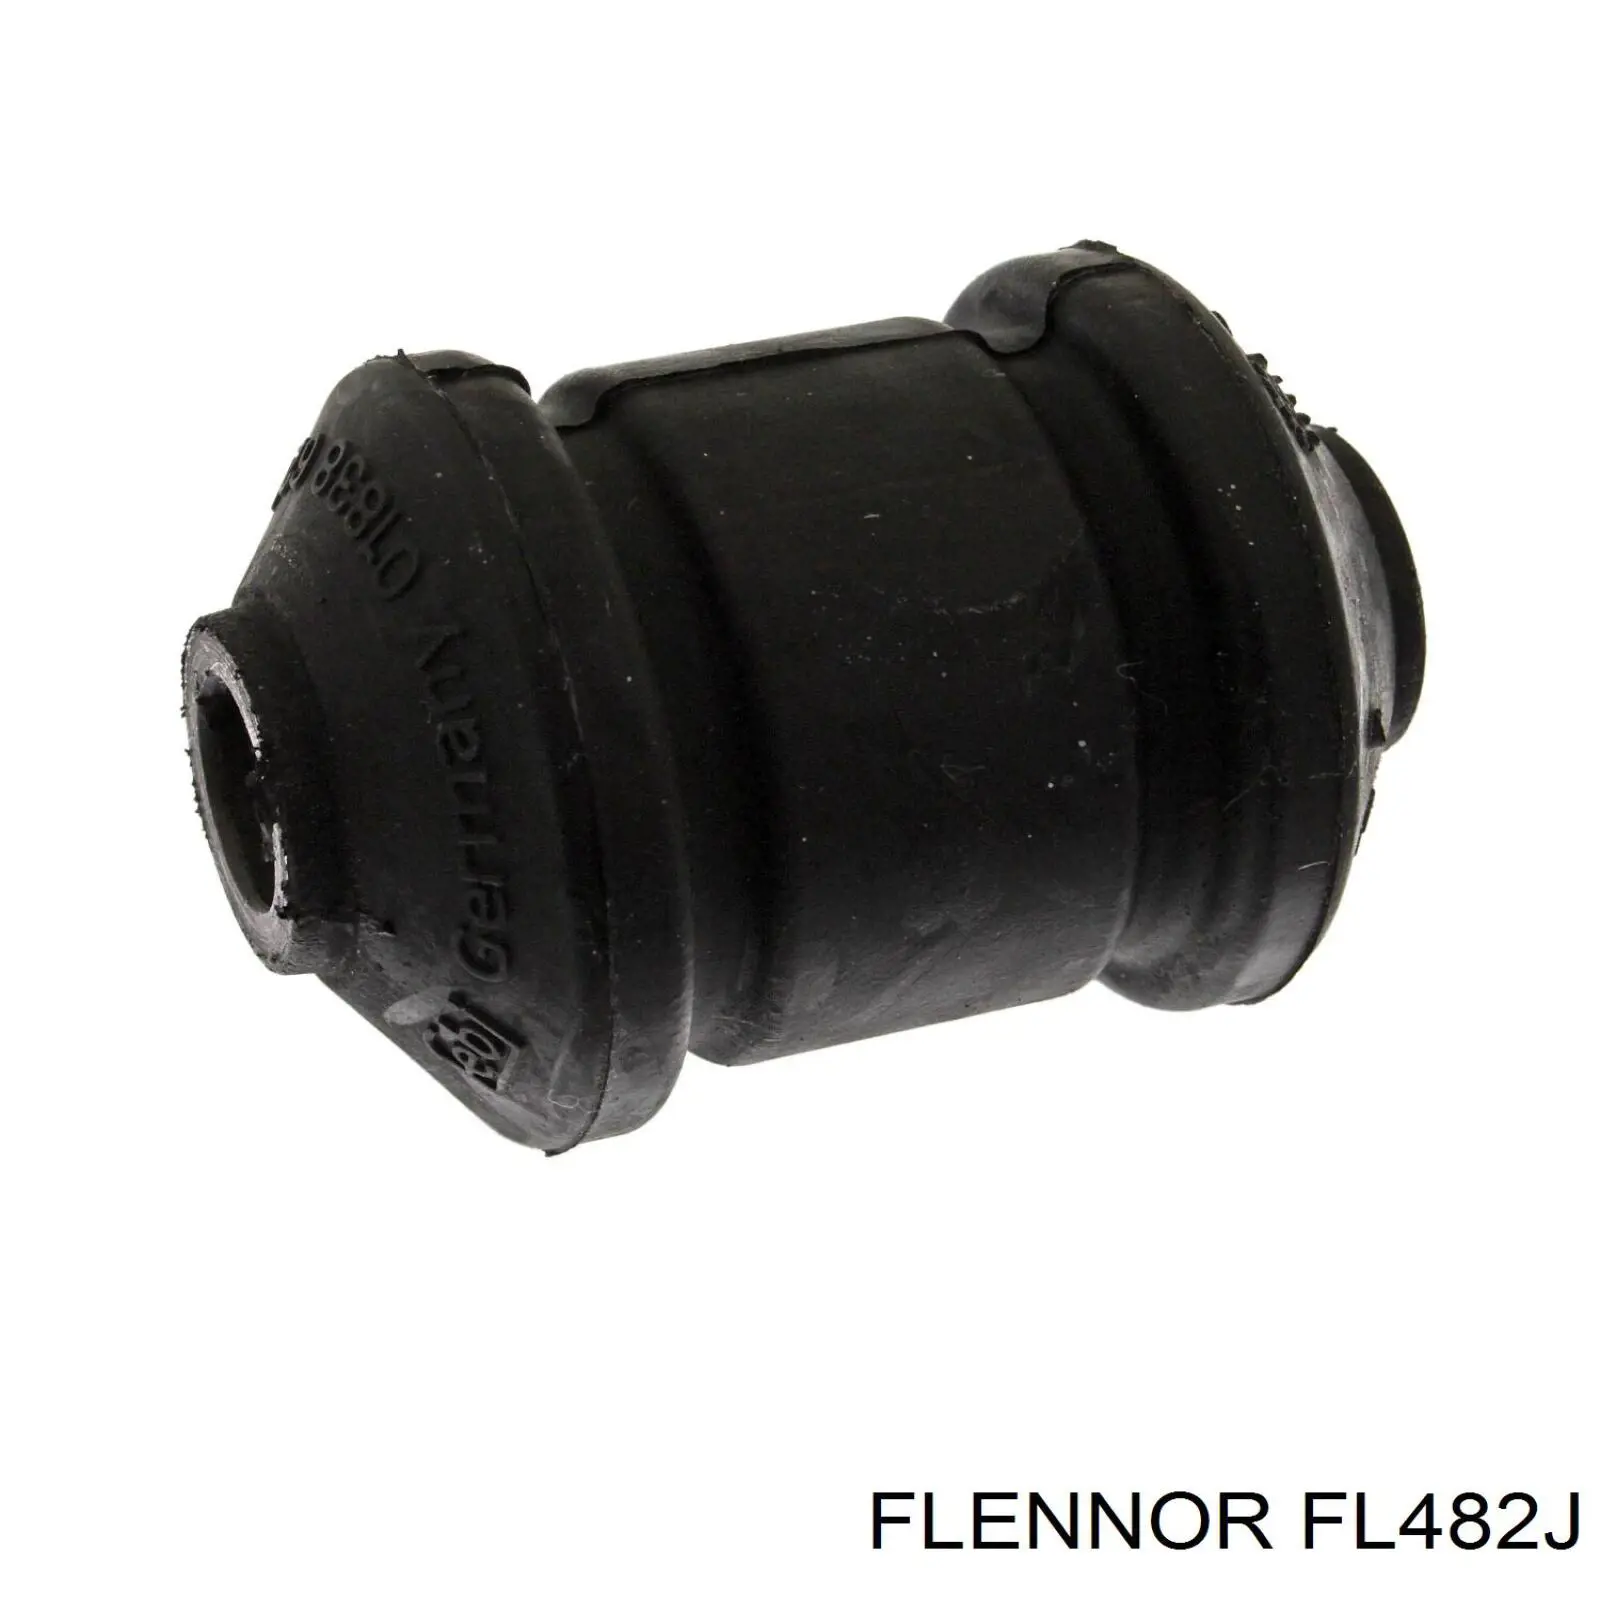 FL482J Flennor silentblock de suspensión delantero inferior